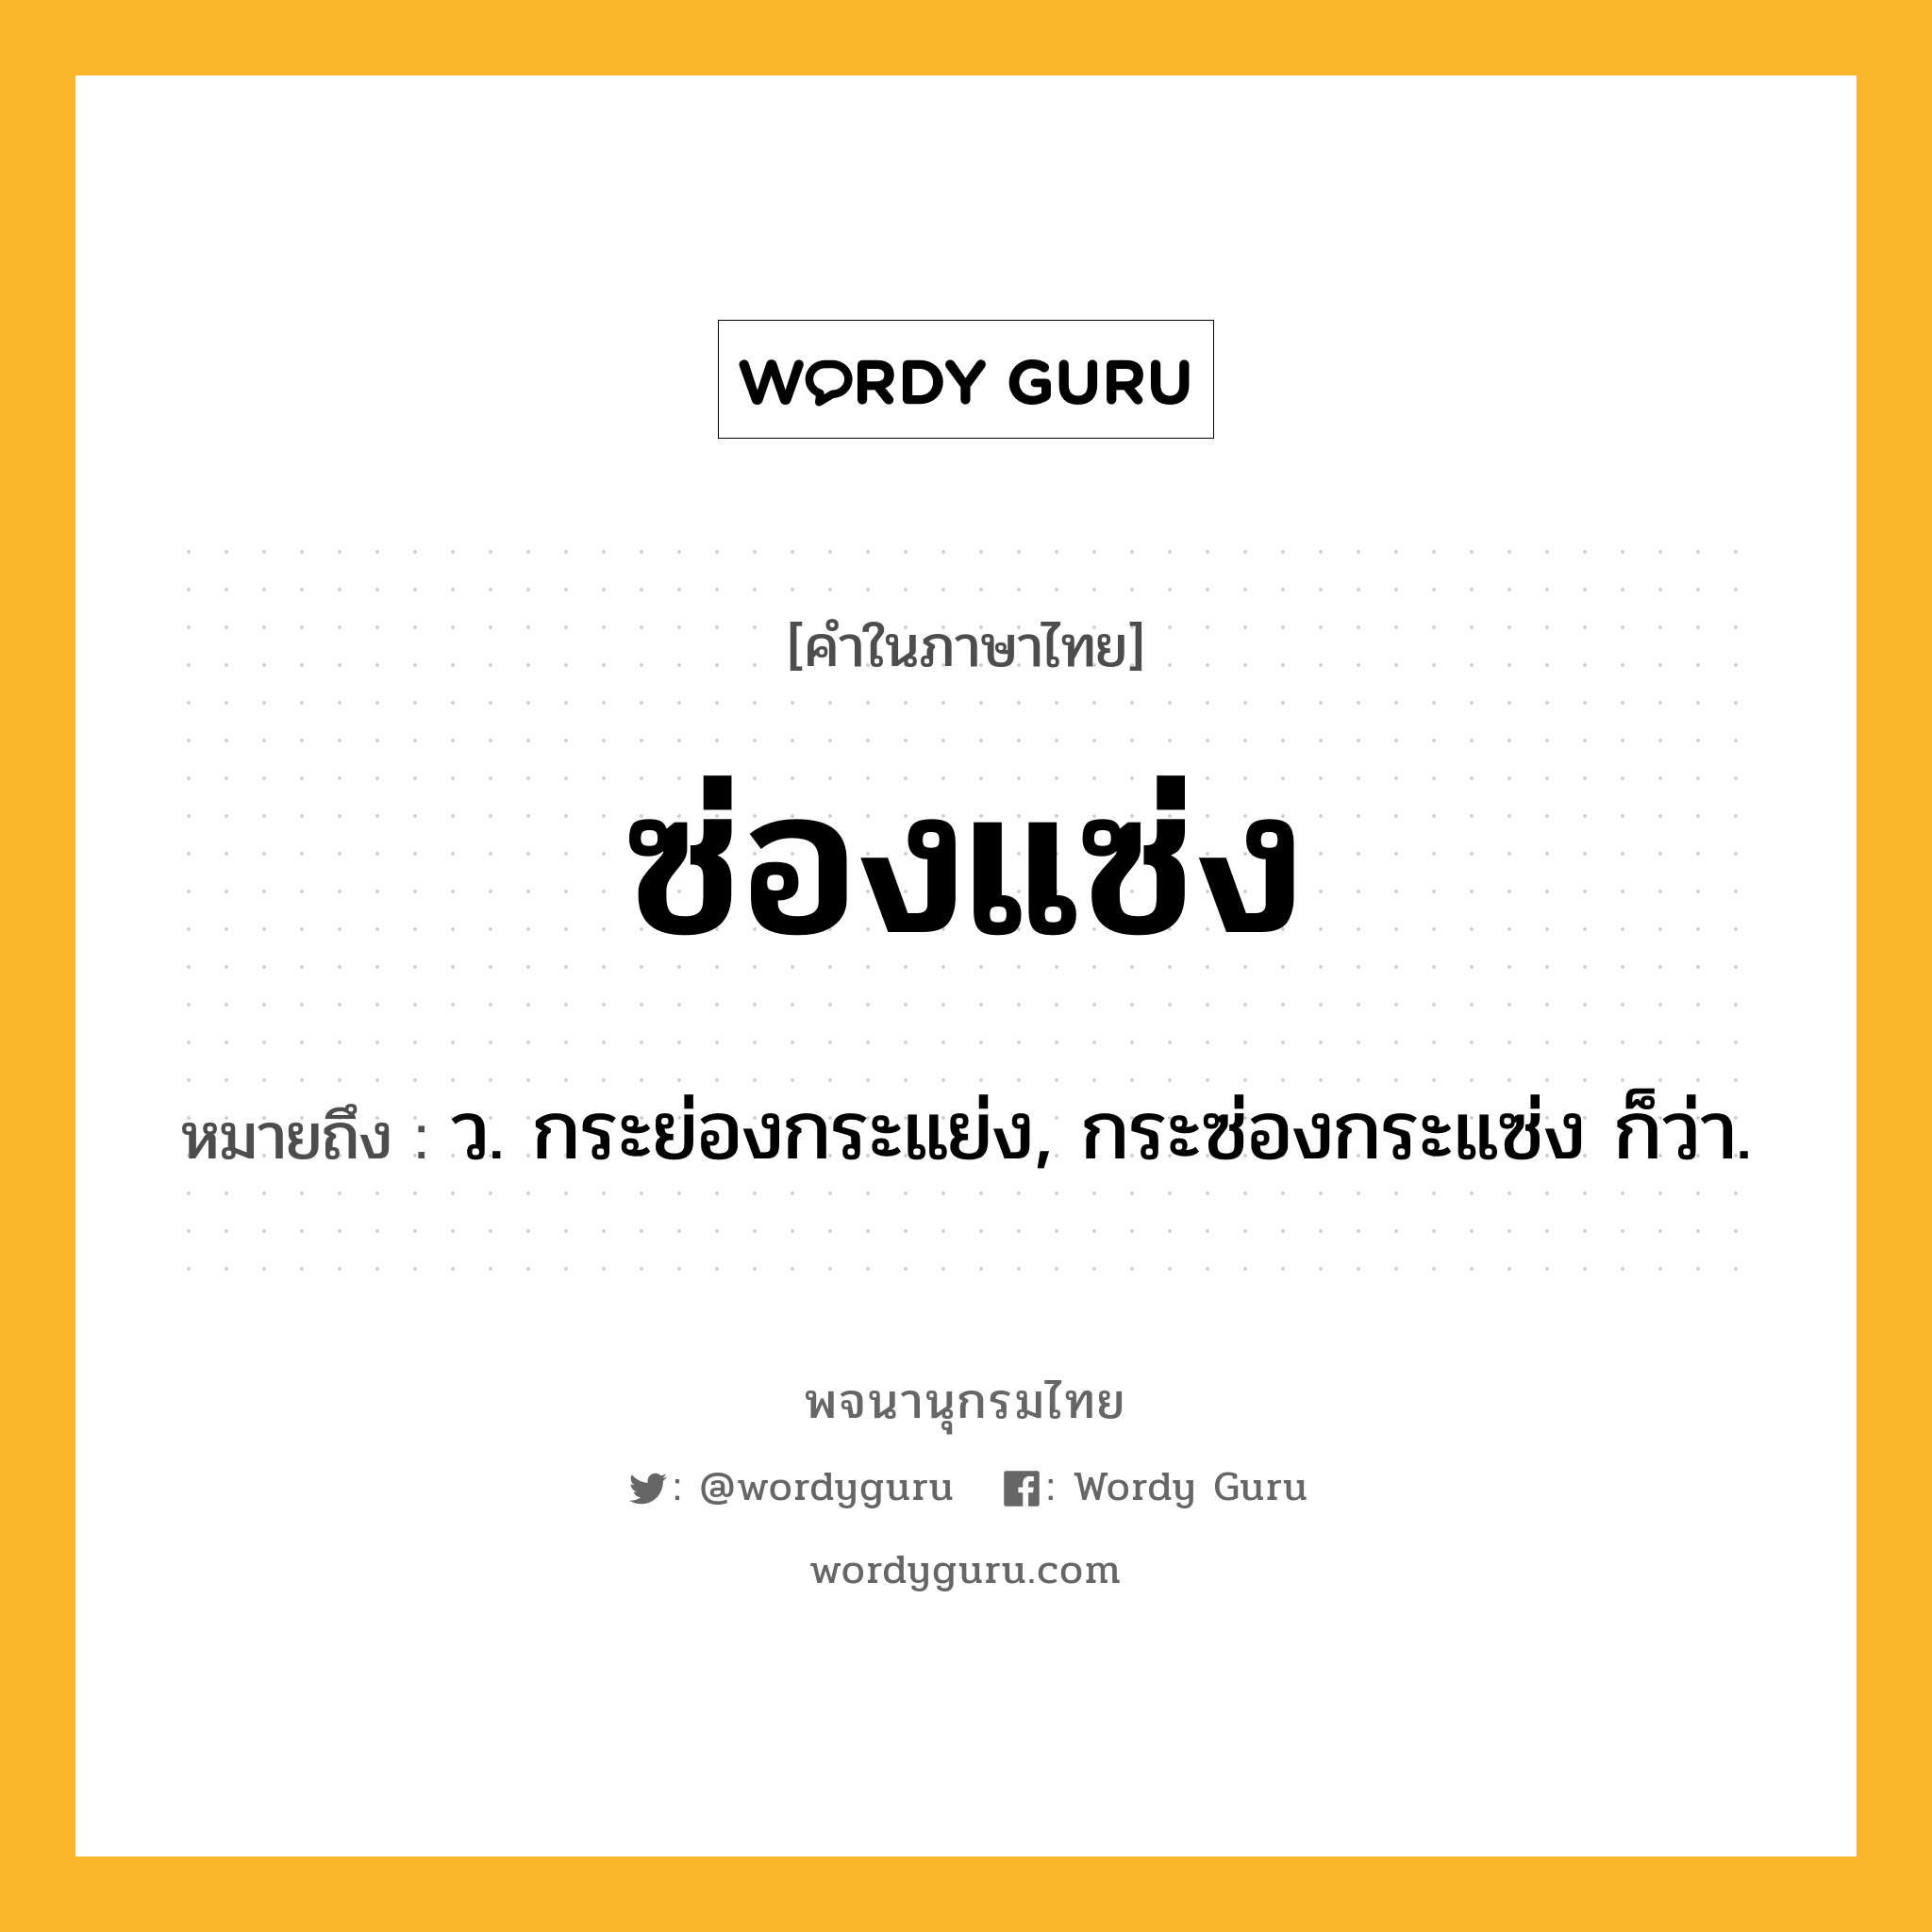 ซ่องแซ่ง ความหมาย หมายถึงอะไร?, คำในภาษาไทย ซ่องแซ่ง หมายถึง ว. กระย่องกระแย่ง, กระซ่องกระแซ่ง ก็ว่า.